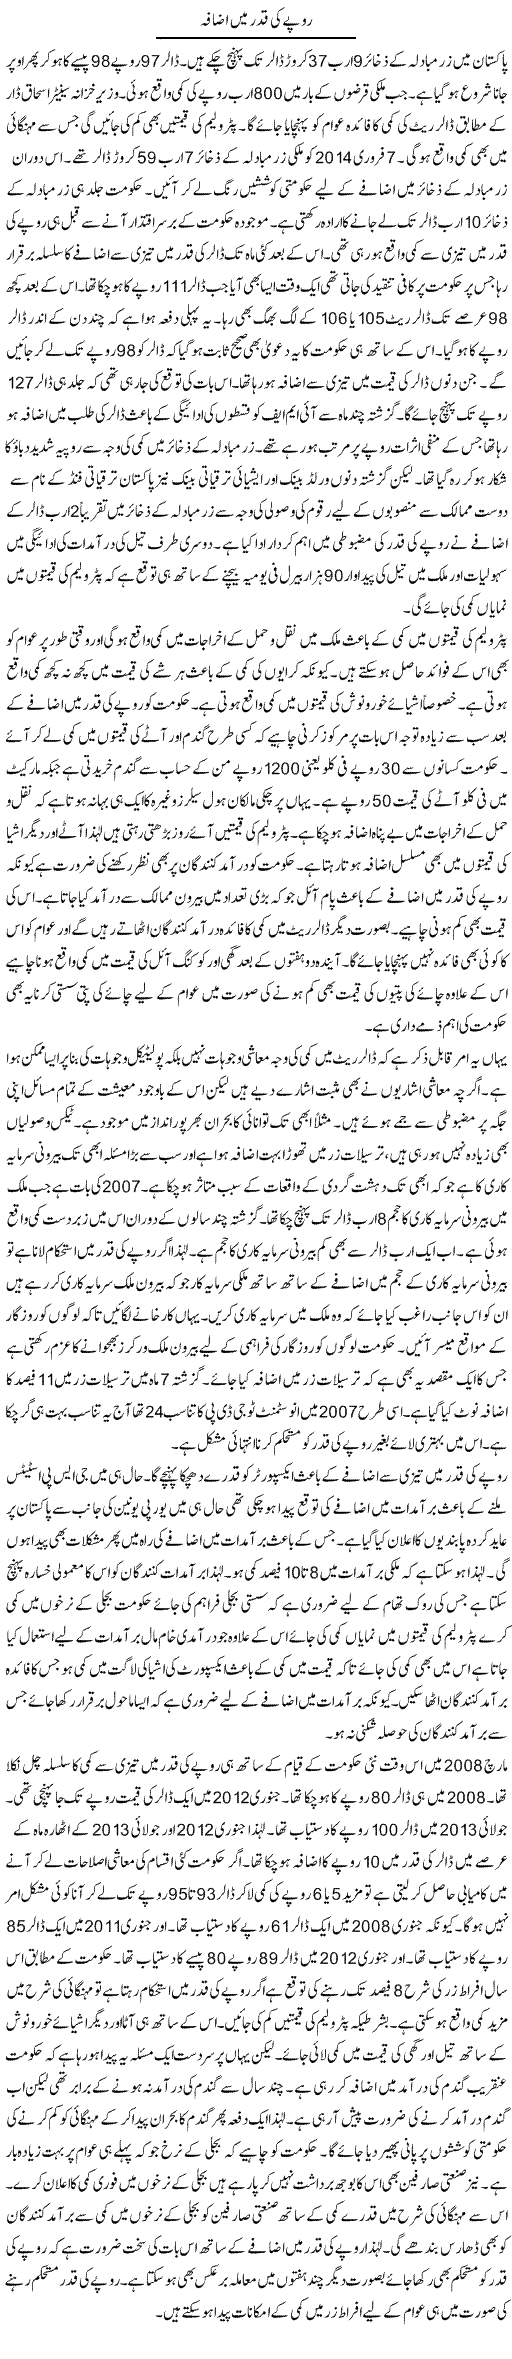 Rupe Ki Qader Main Izafa | M.I Khalil | Daily Urdu Columns